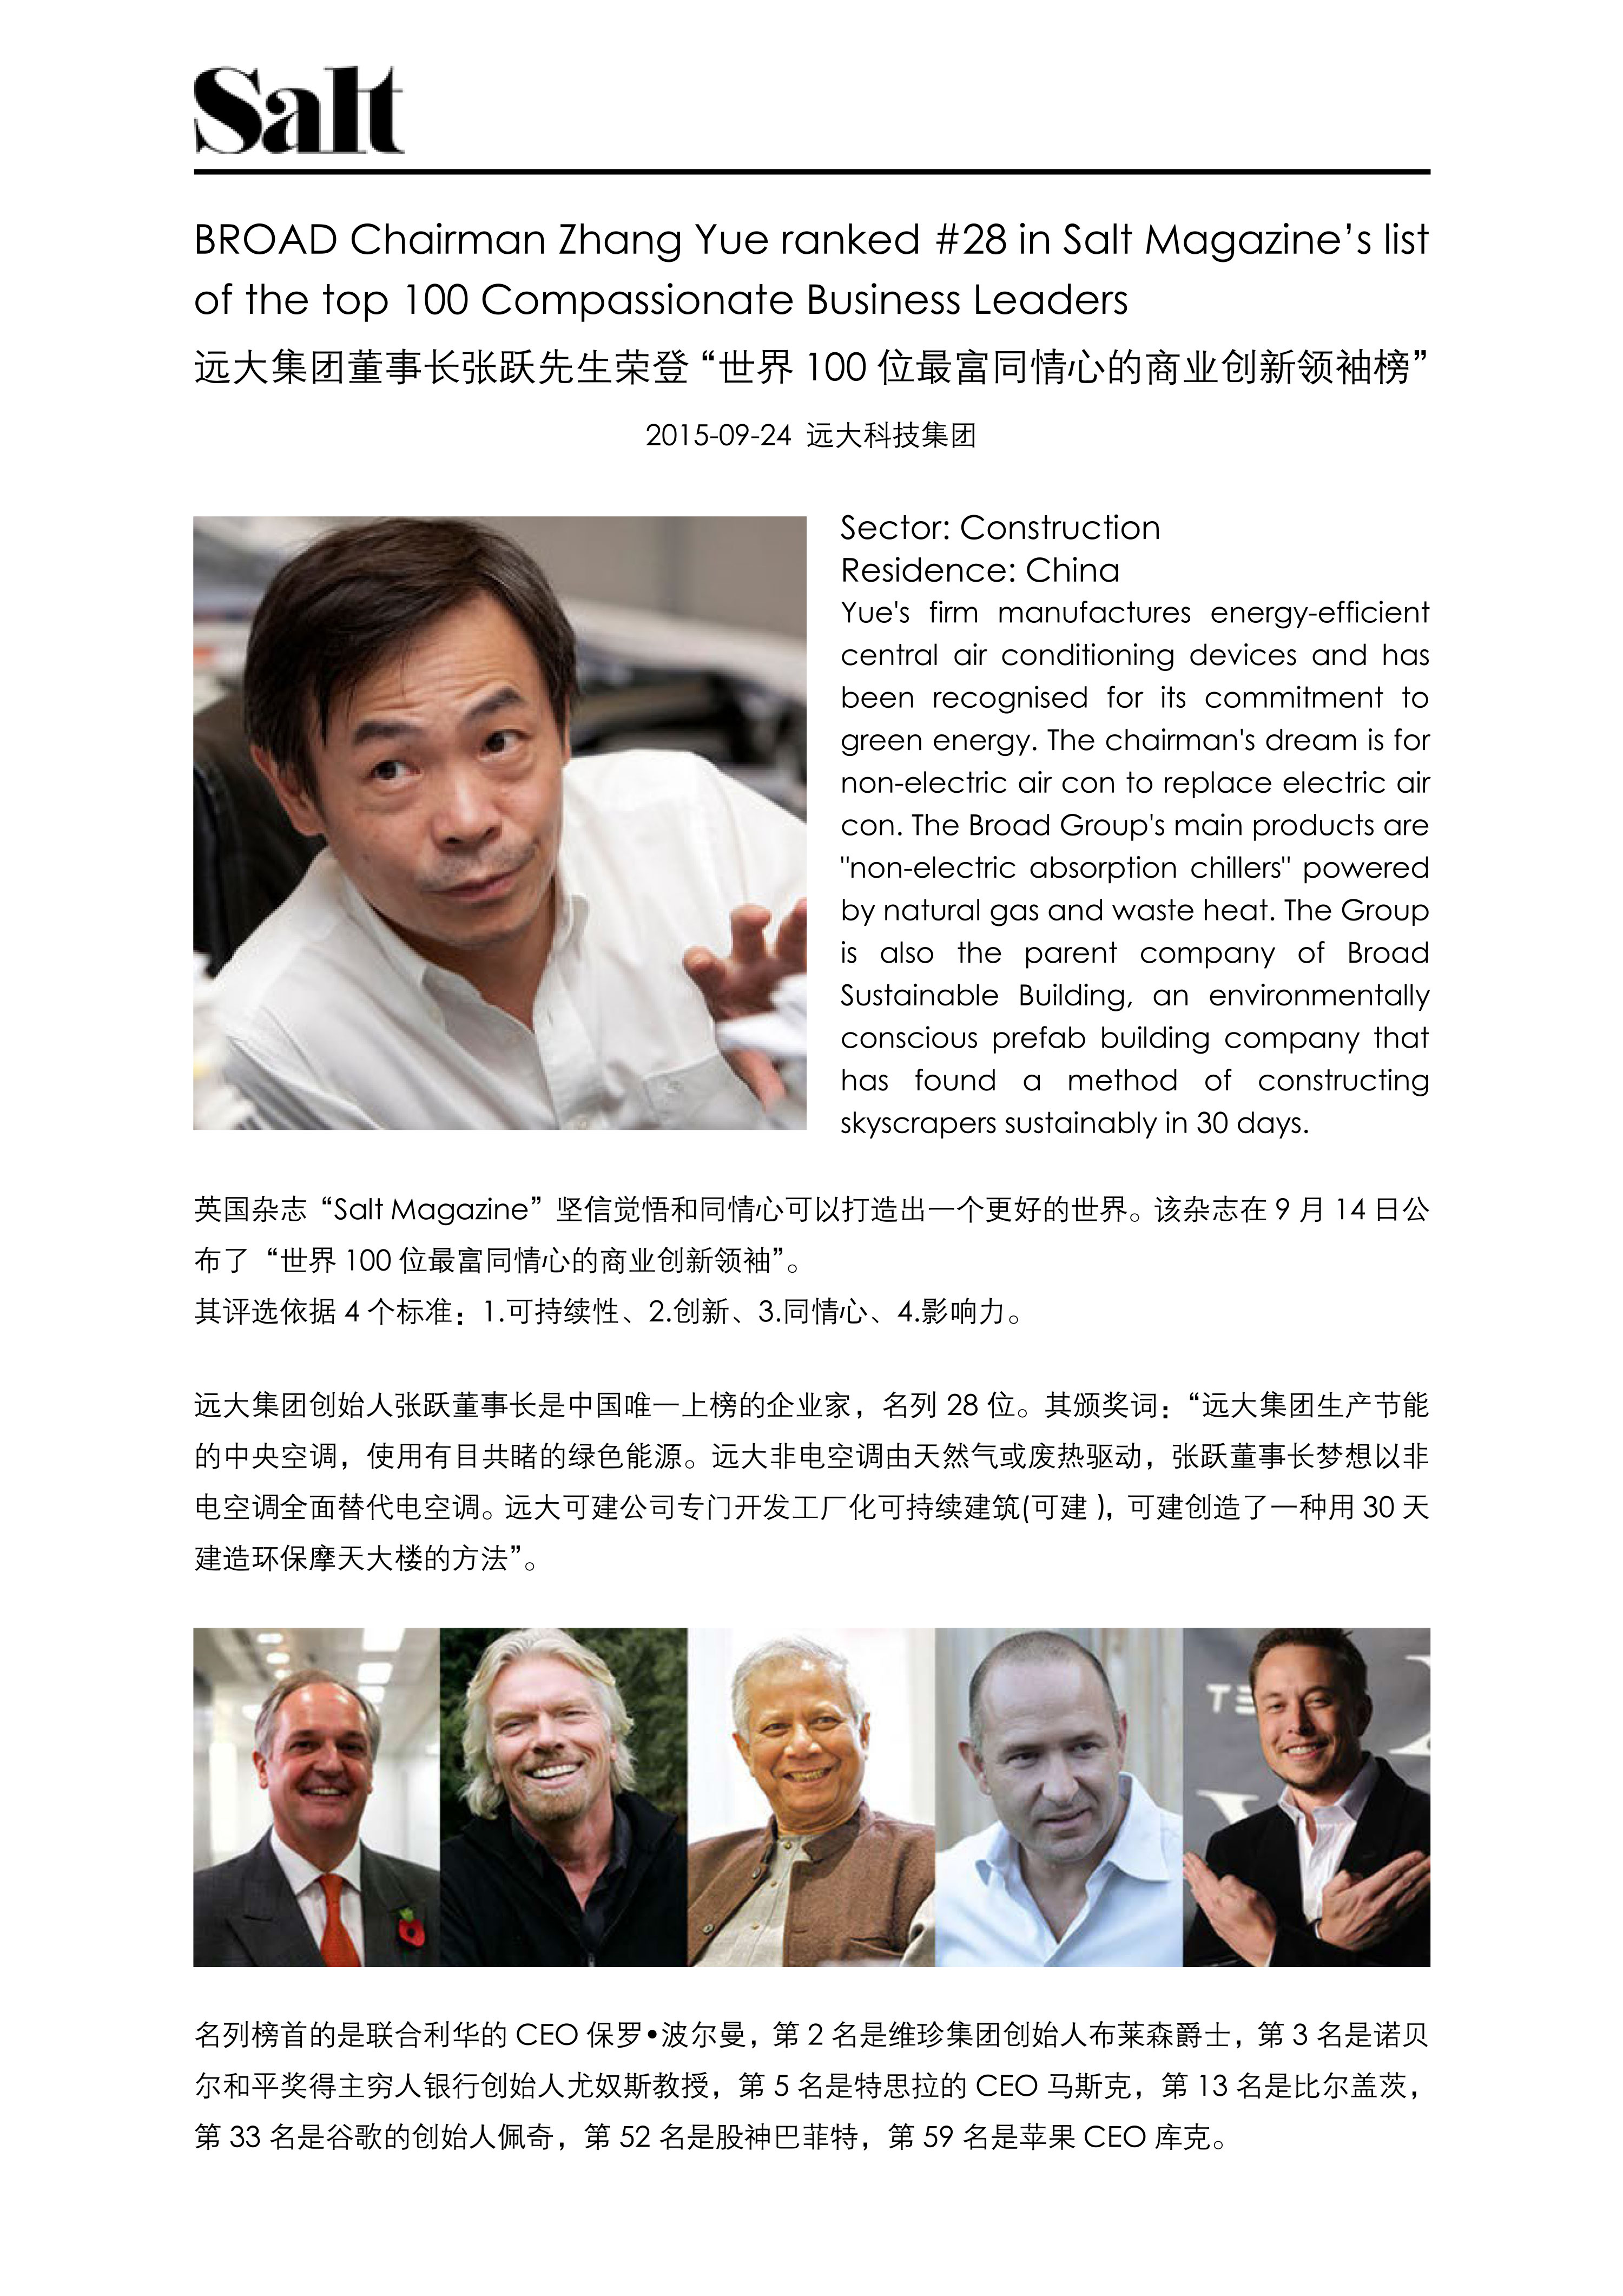 张跃先生荣登世界100位最富同情心的商业创新领袖榜